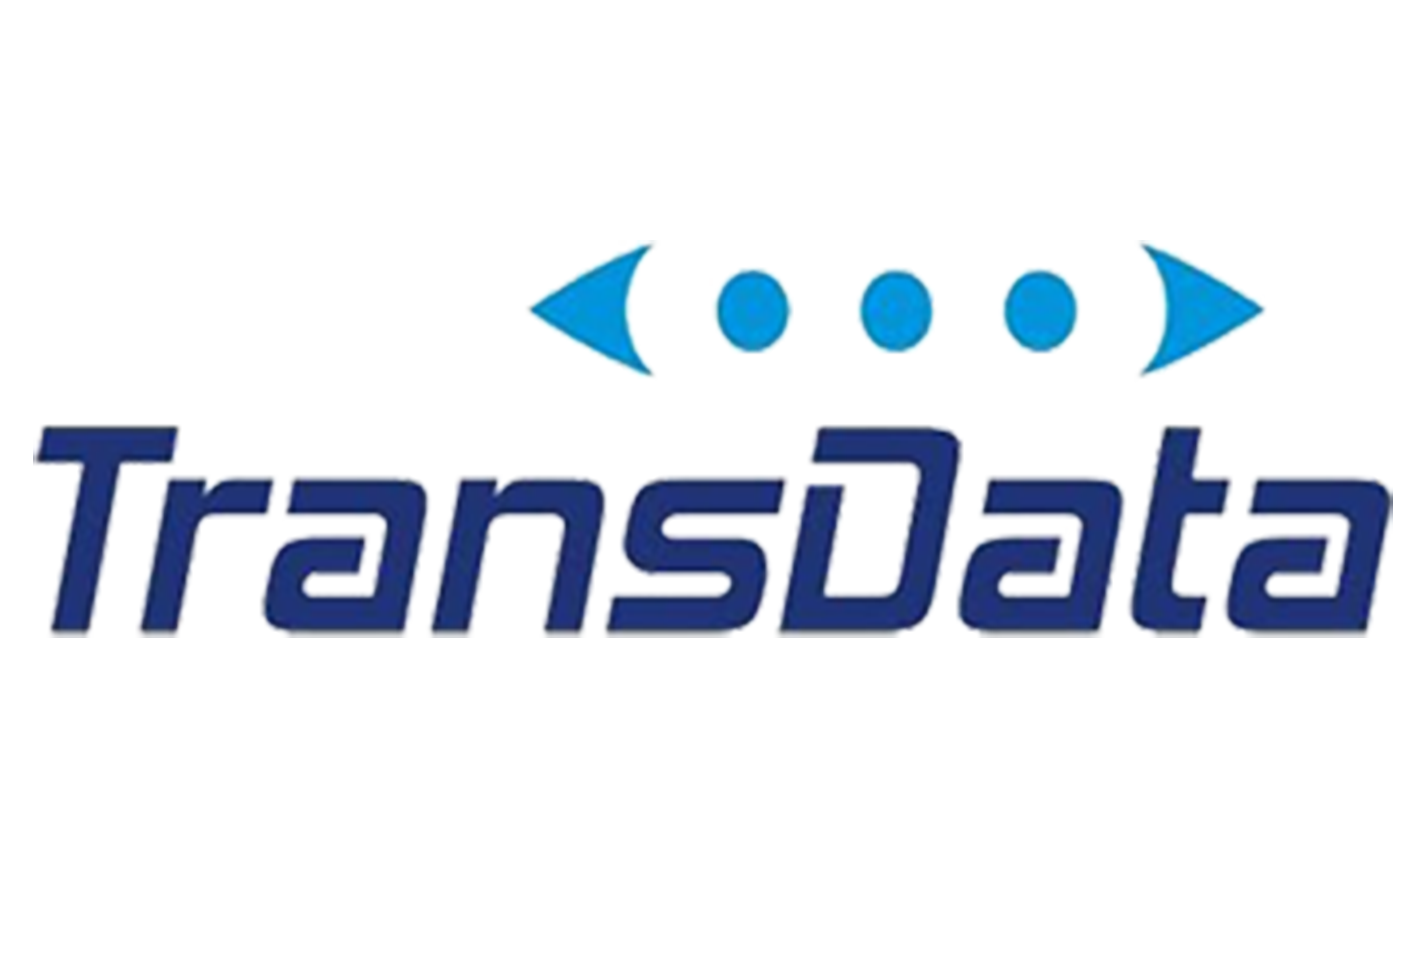 transdata portable computer